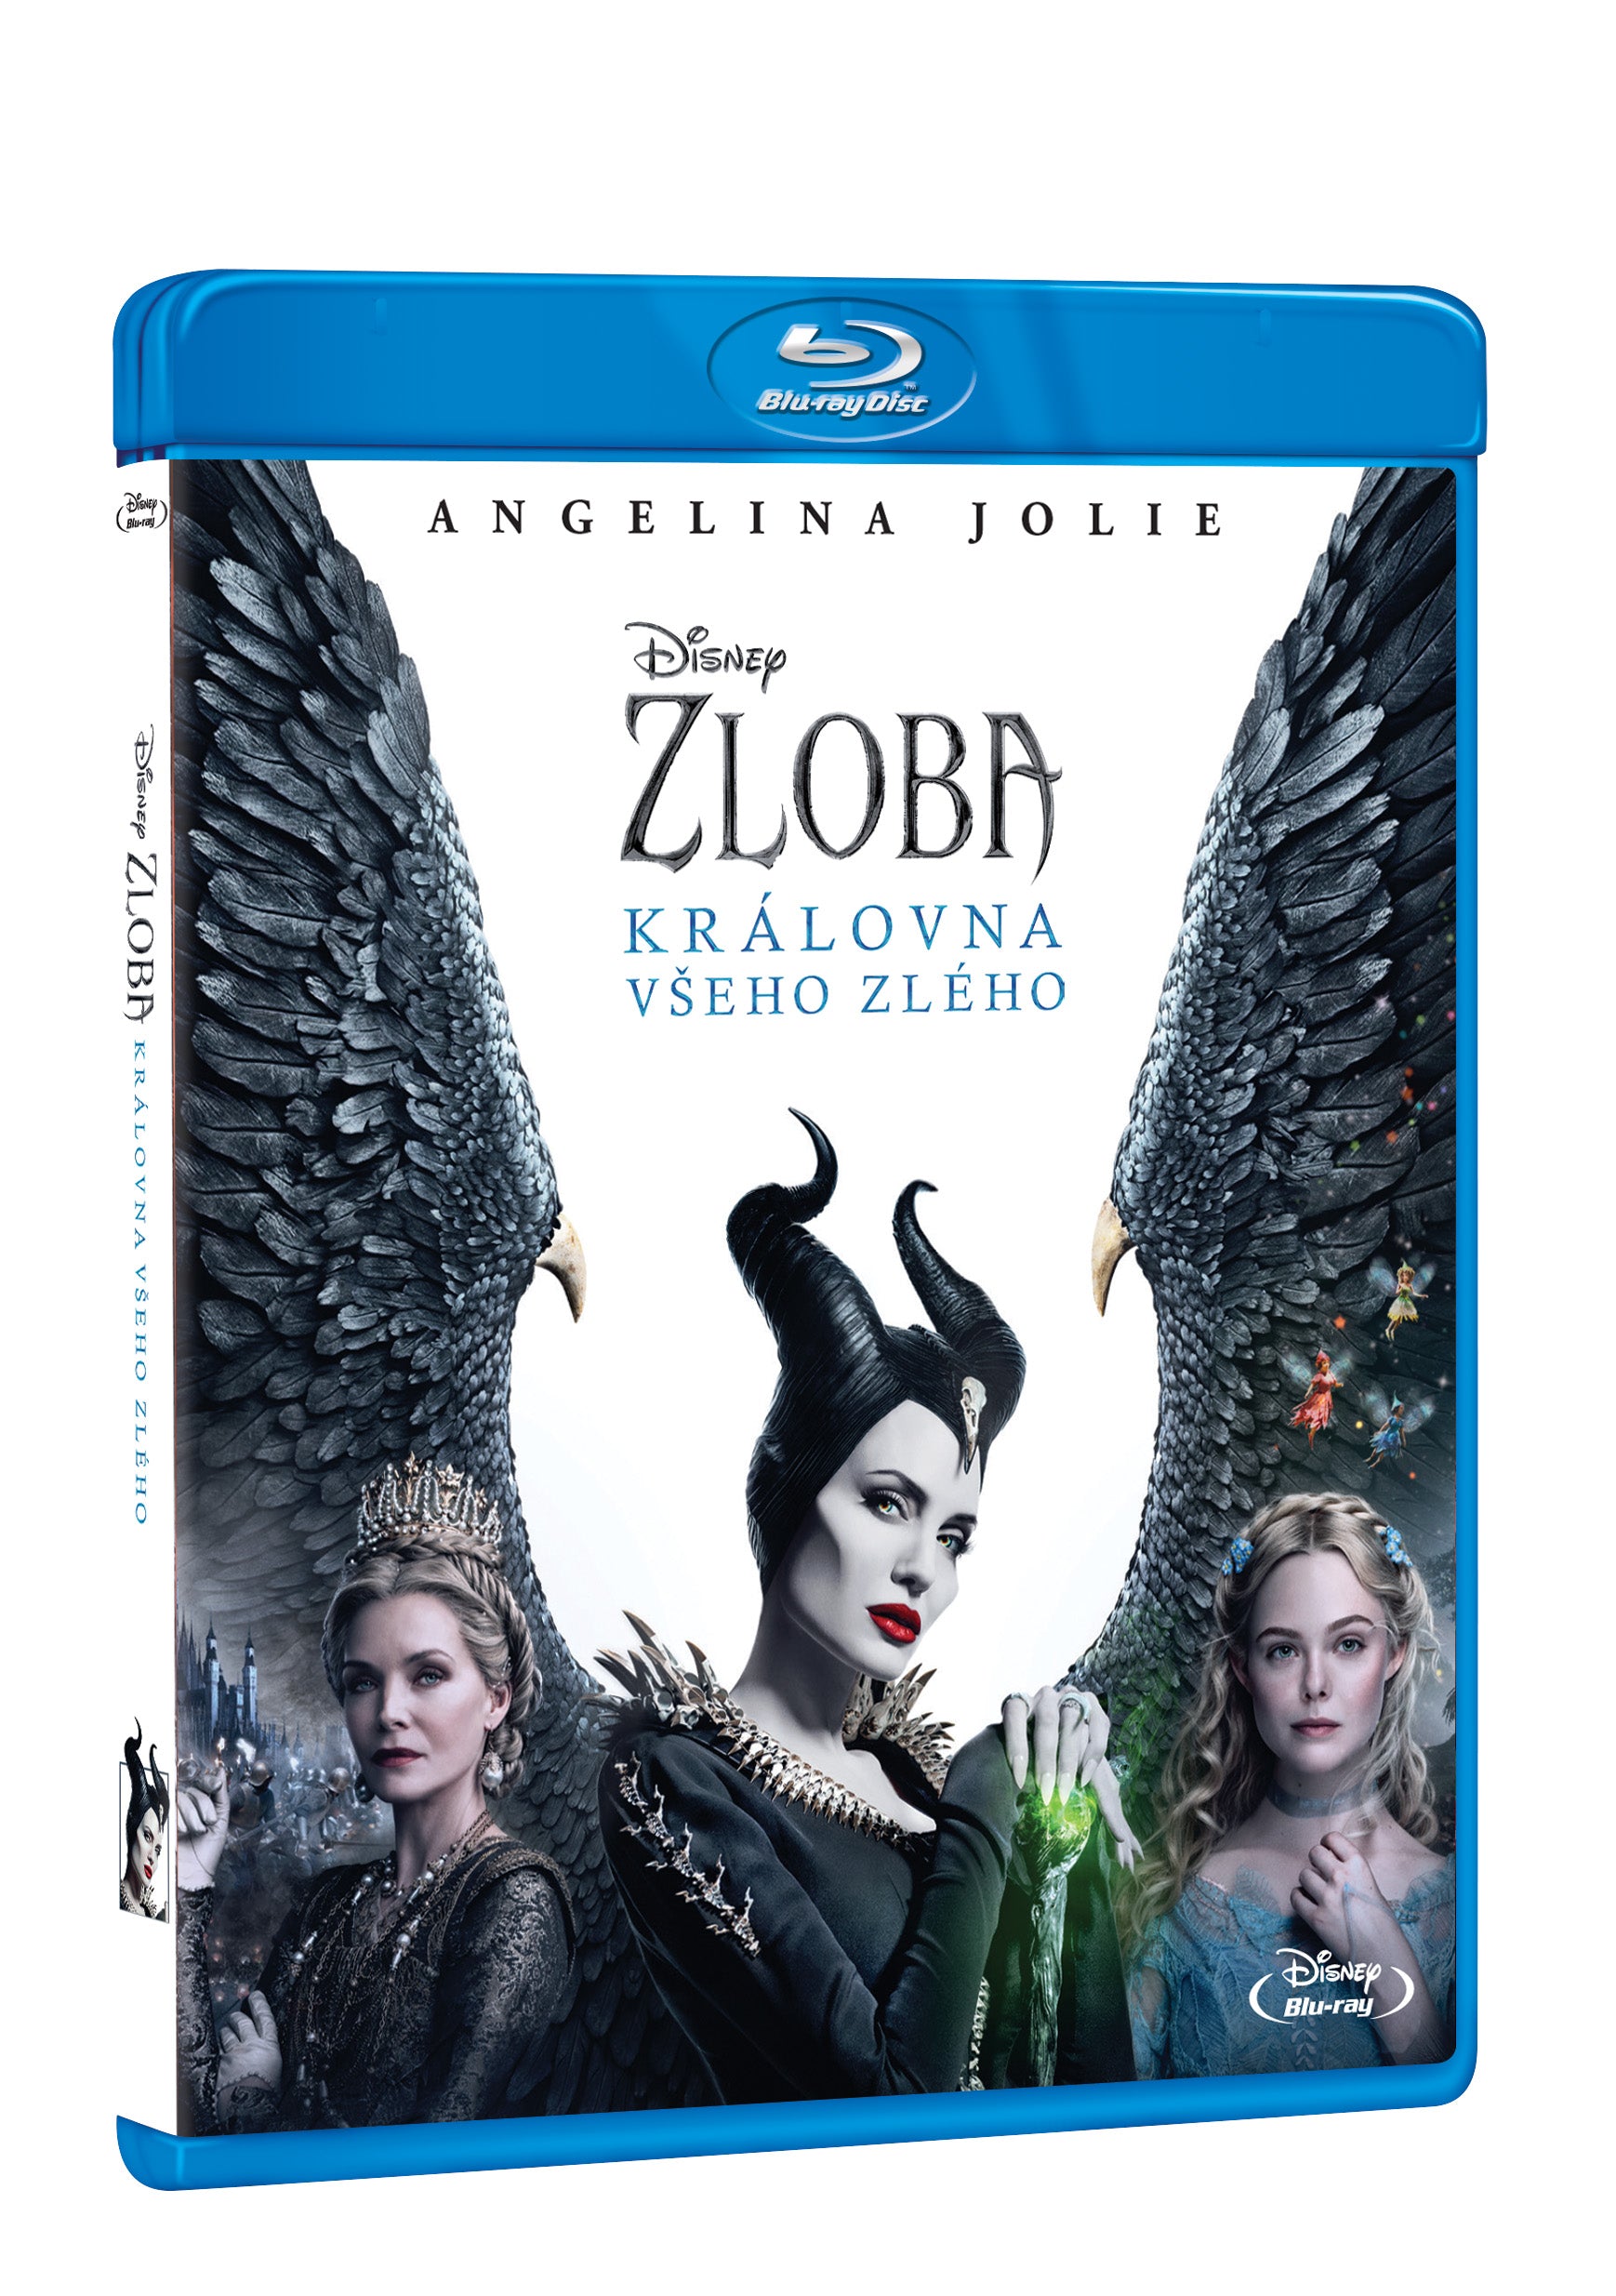 Zloba: Kralovna vseho zleho BD / Maleficent: Mistress of Evil - Czech version